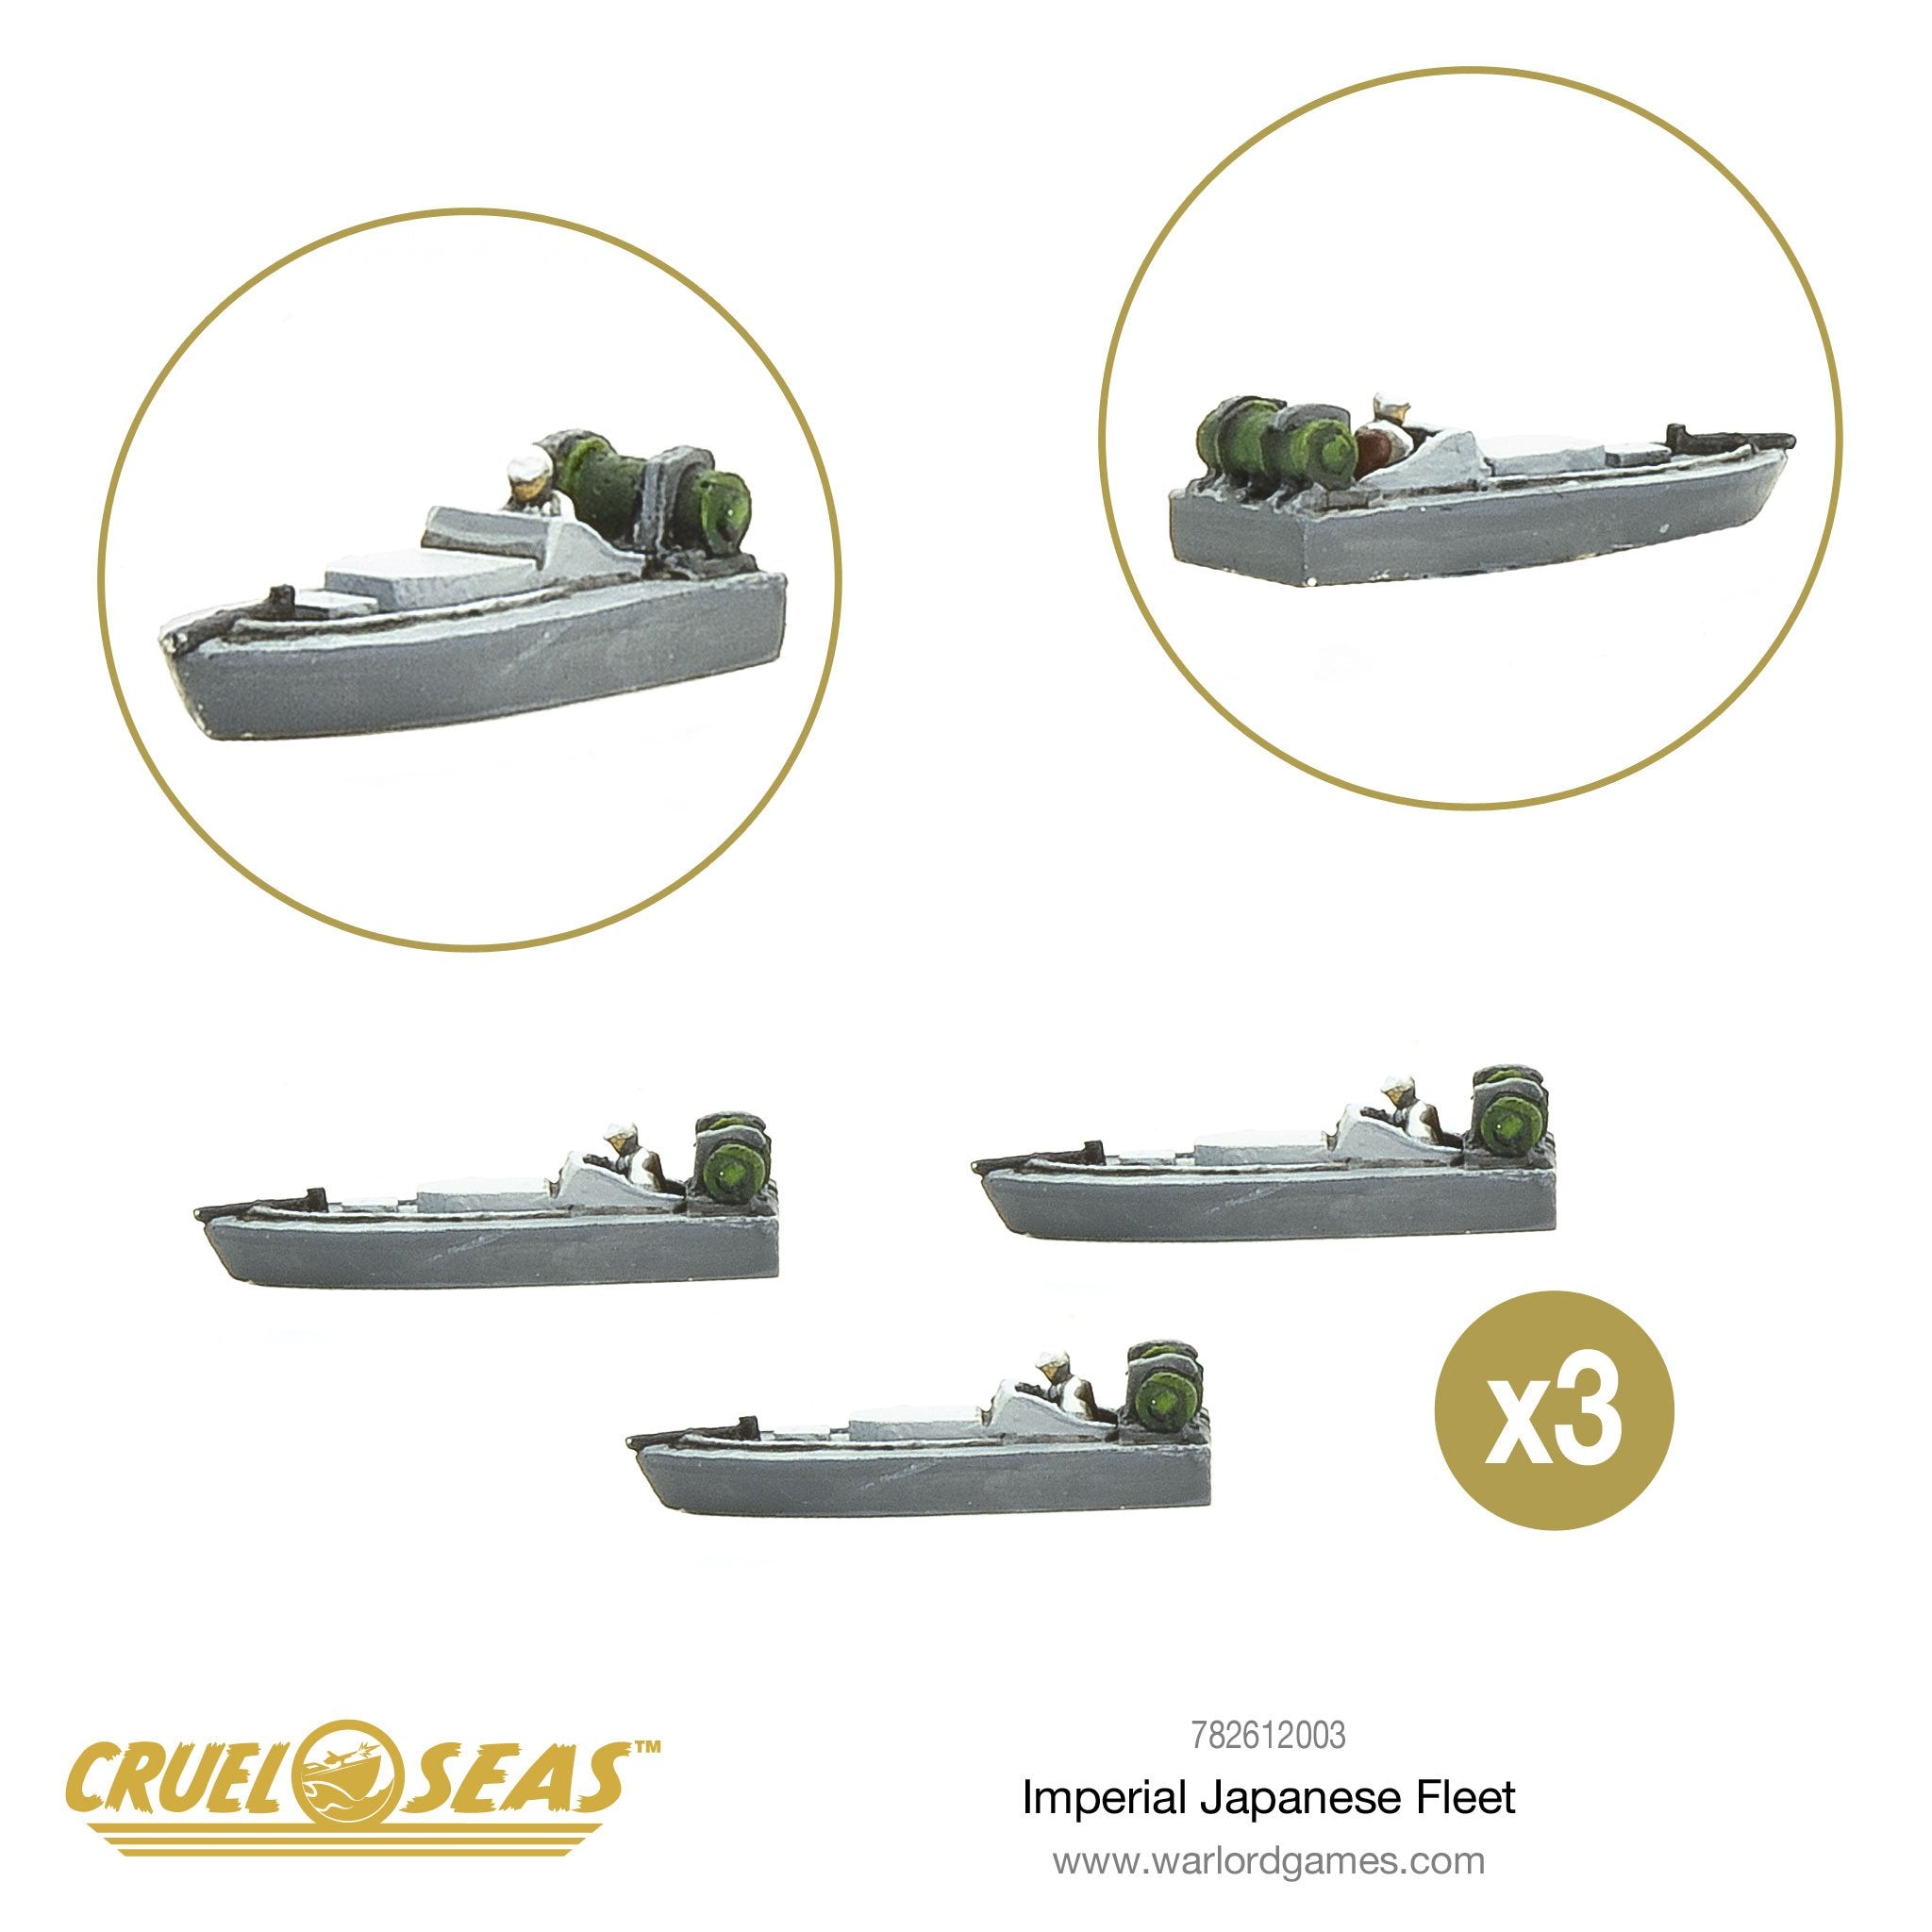 Imperial Japanese Navy Fleet + Aircraft Deal